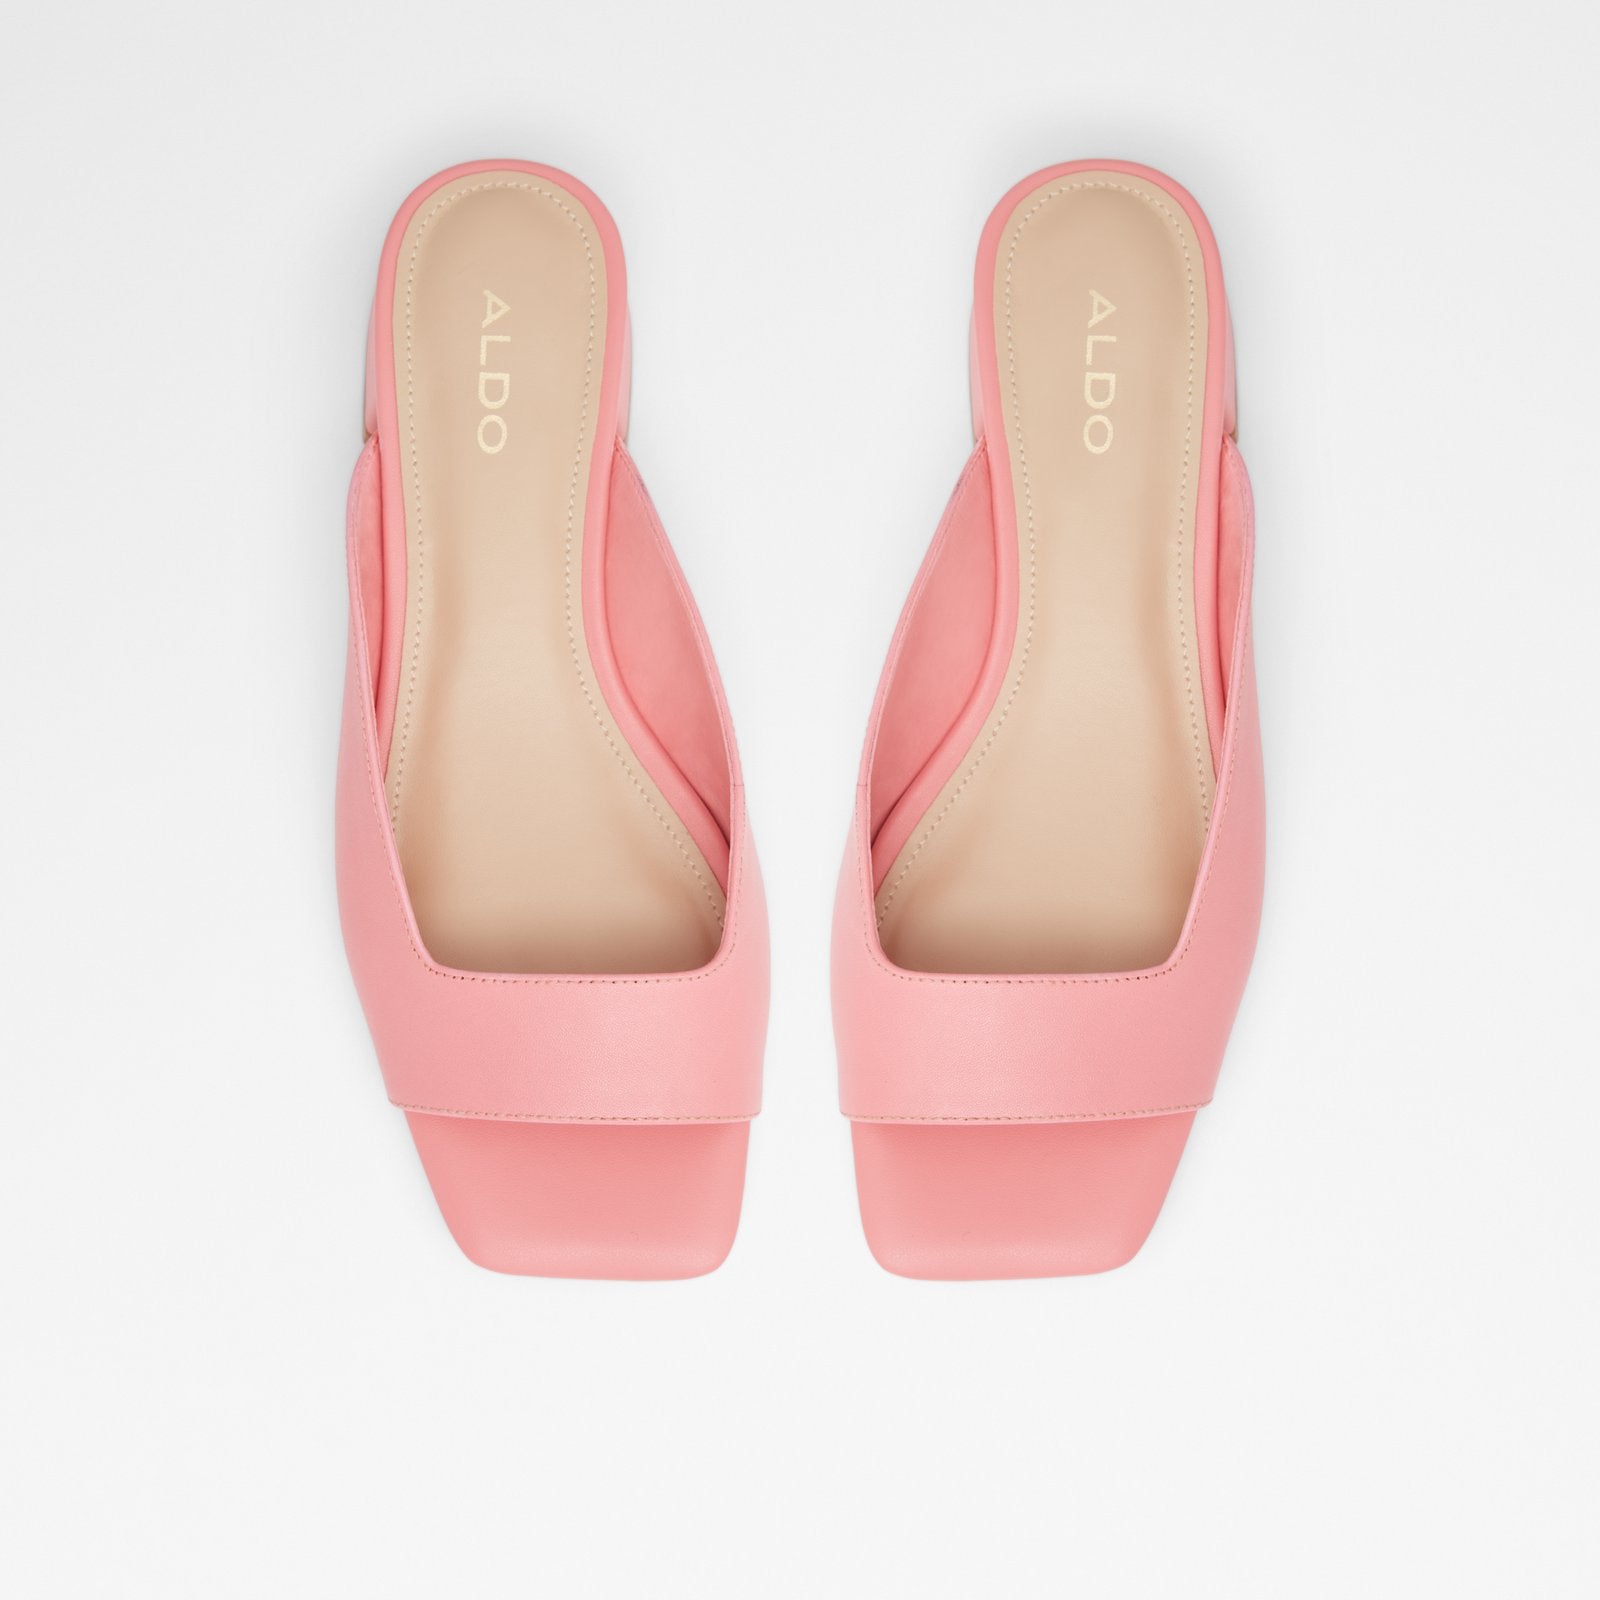 Culgoa Women Shoes - Pink - ALDO KSA